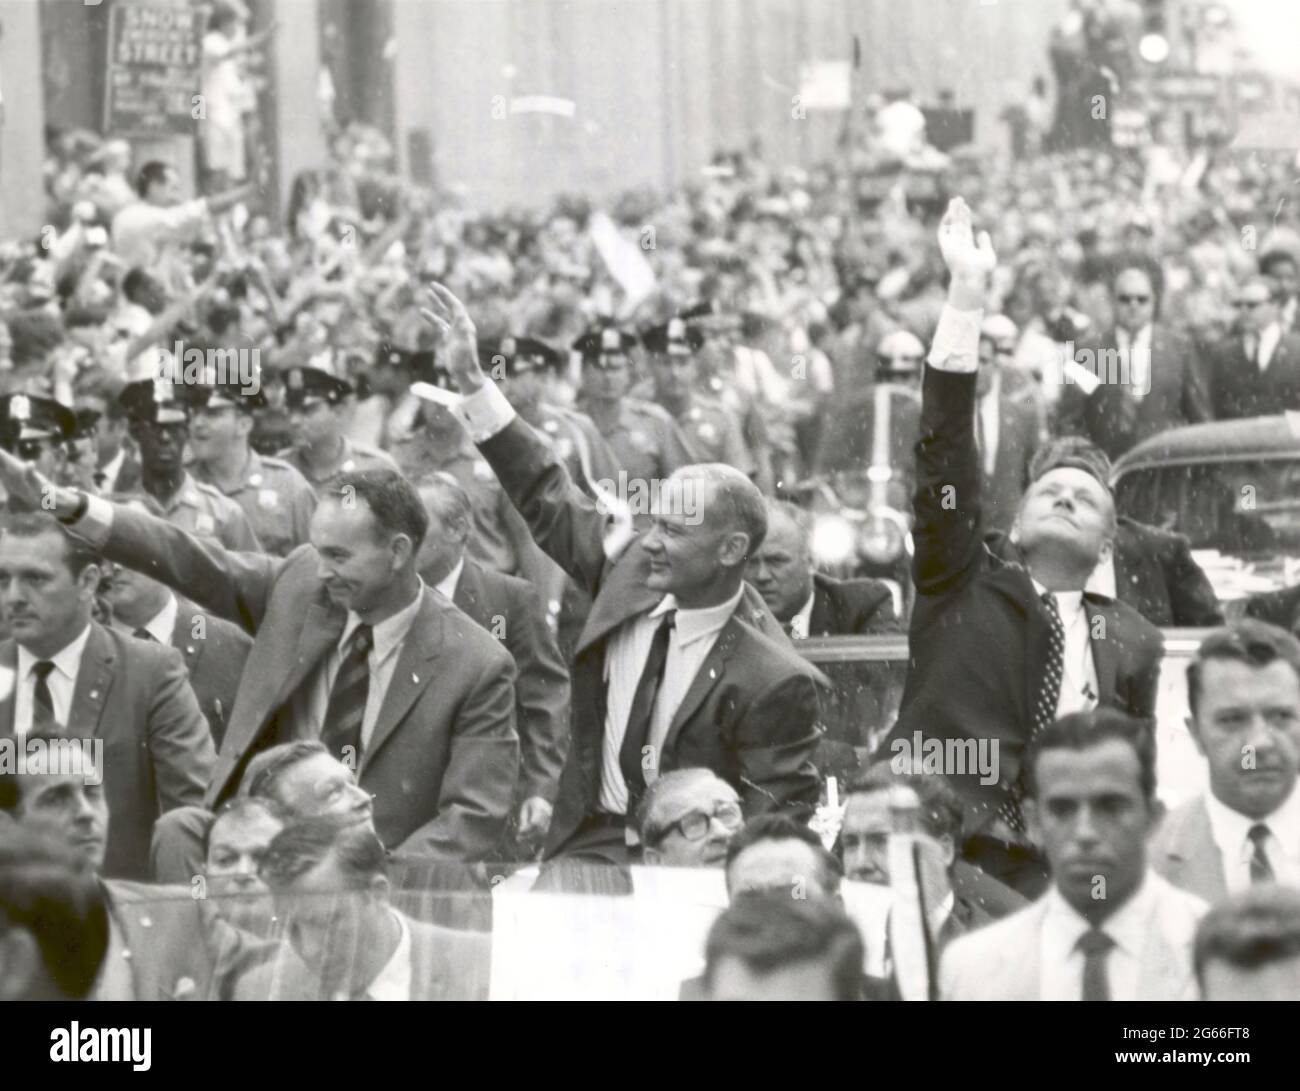 La ville de New York accueille les astronautes Apollo 11 (le 13 août 1969) la ville de New York accueille les trois astronautes Apollo 11, Neil A. Armstrong, Michael Collins et Buzz Aldrin, Jr., Dans une exposition de ruban de ticker sur Broadway et Park Avenue, dans un défilé appelé à l'époque comme le plus grand dans l'histoire de la ville. Banque D'Images